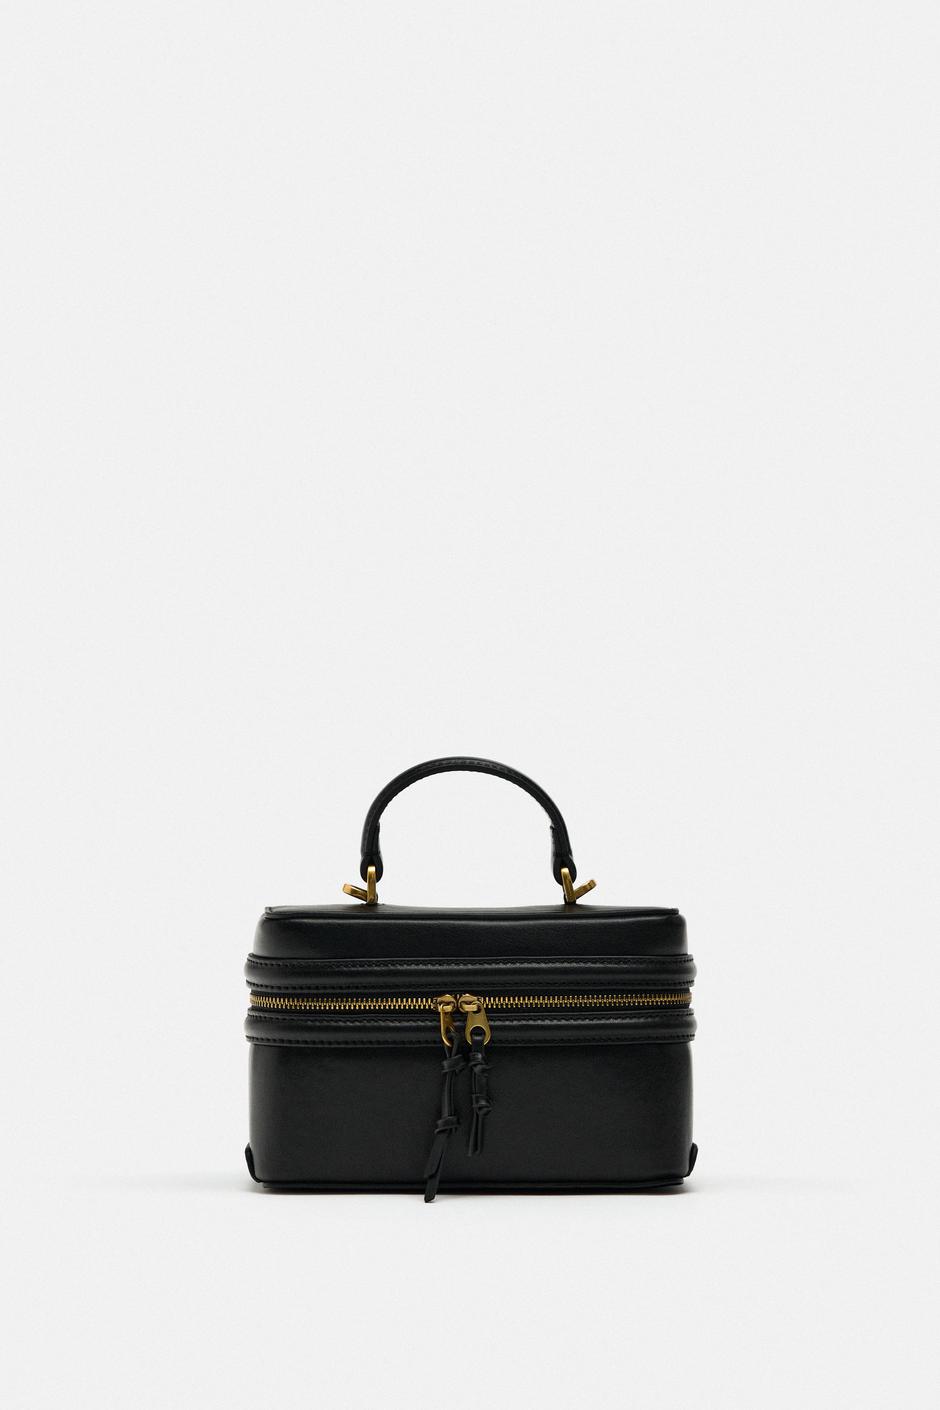 Foto: Zara, crna torbica sa zlatnim detaljima (25,95 eura) | Autor: zara